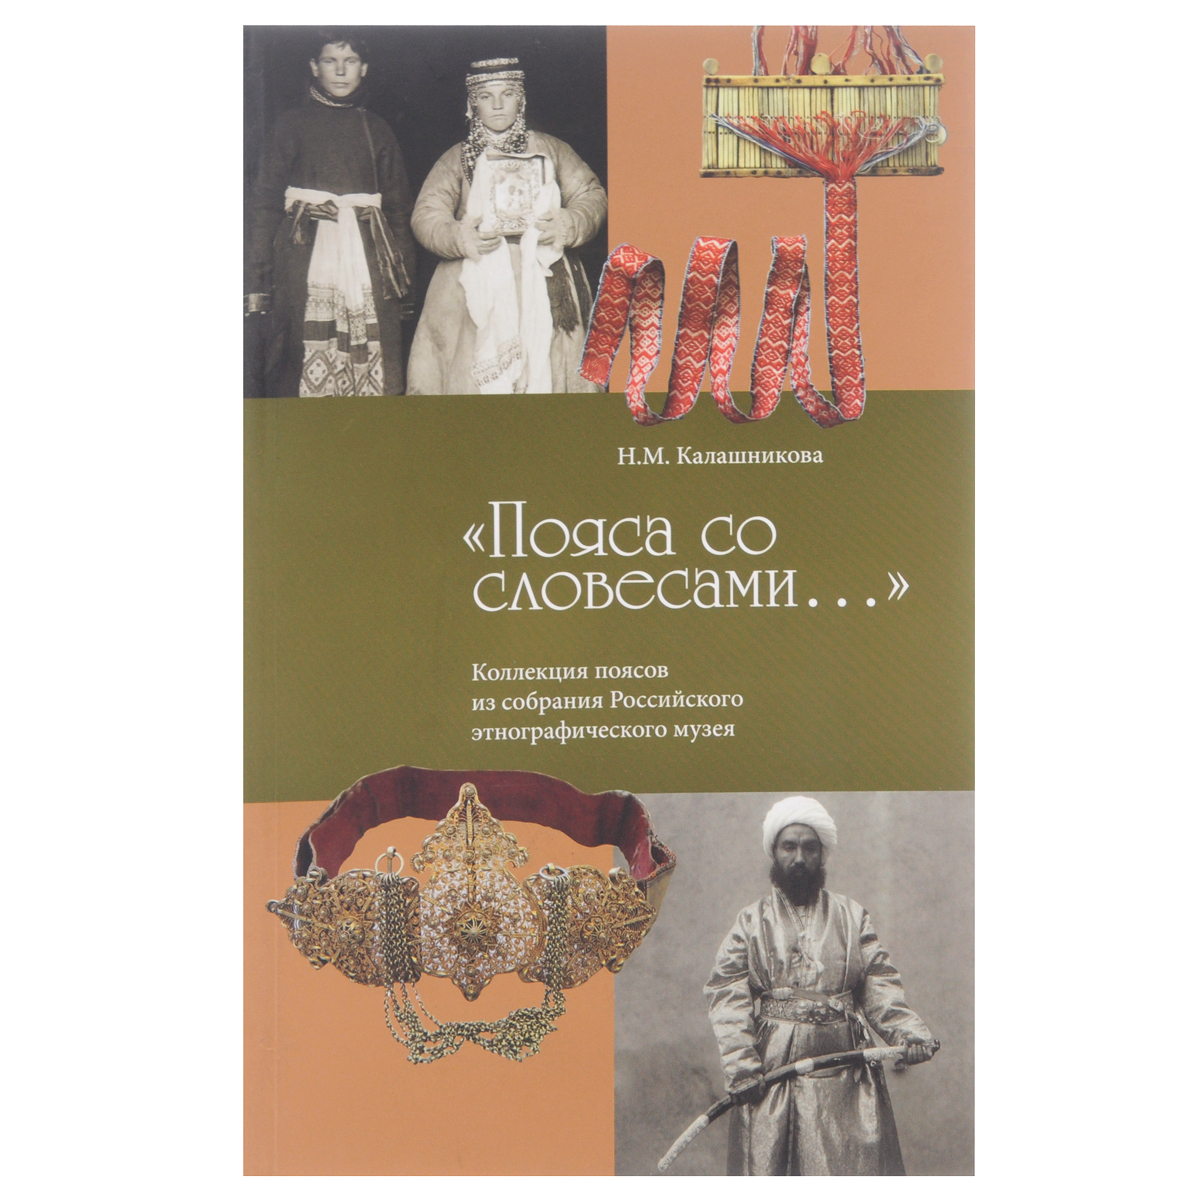 фото "Пояса со словесами..." Коллекция поясов из собрания Российского этнографического музея